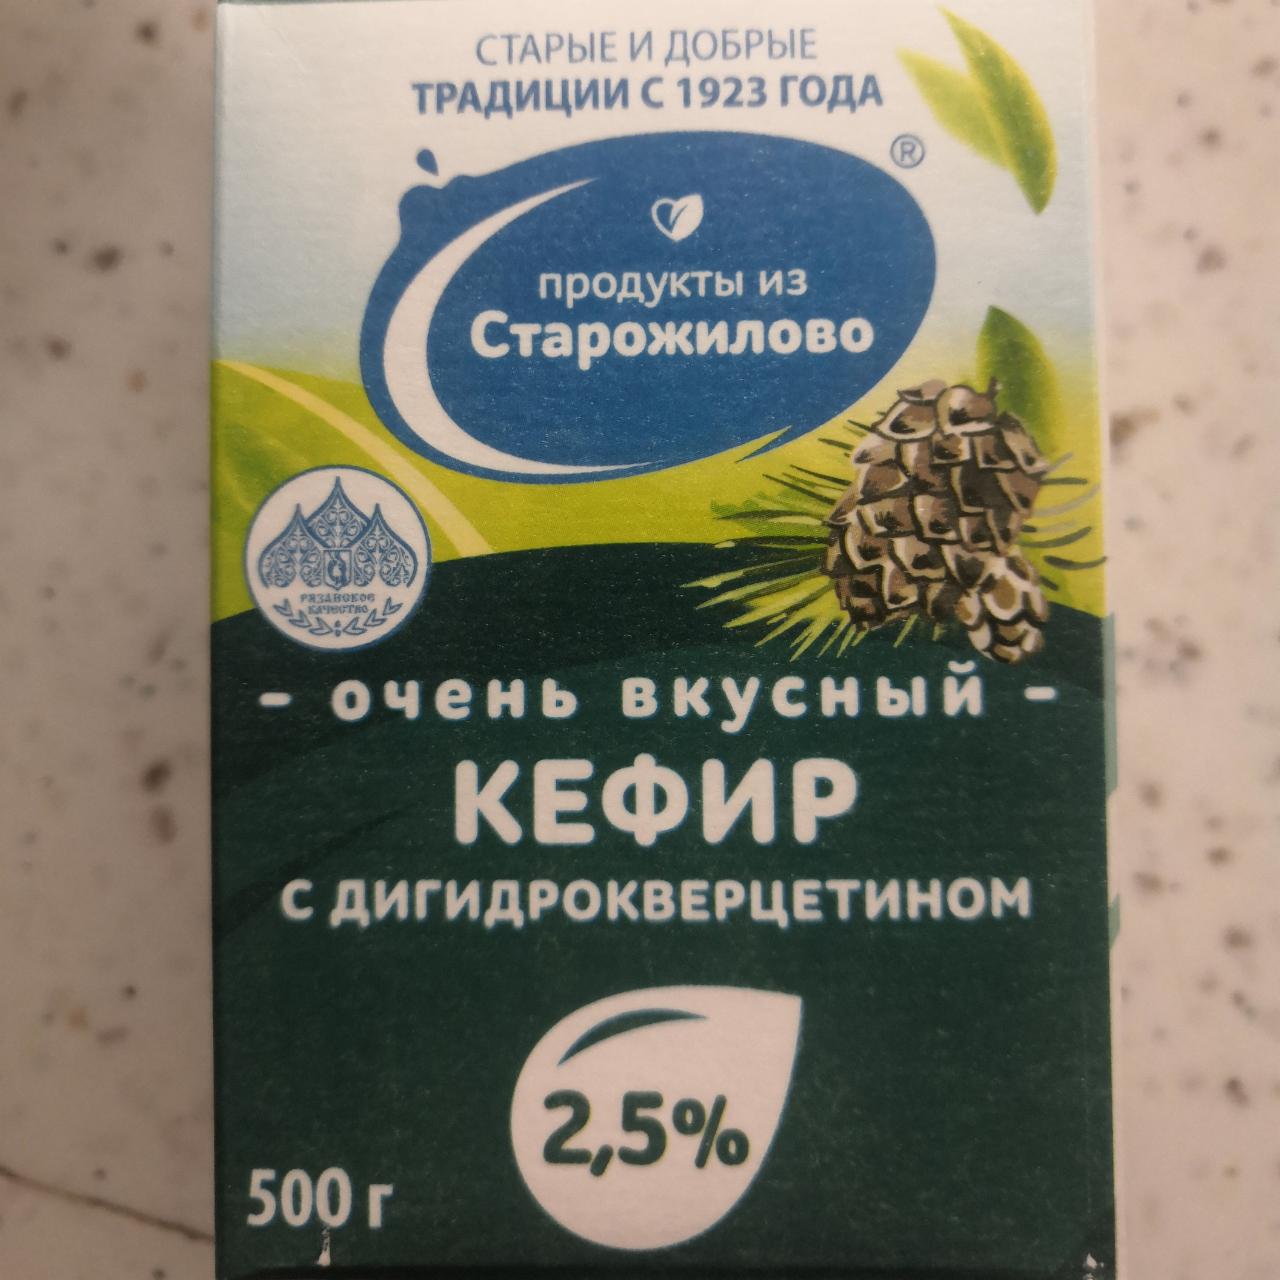 Фото - Кефир с дигидрокверцетином продукты из Сторожилово